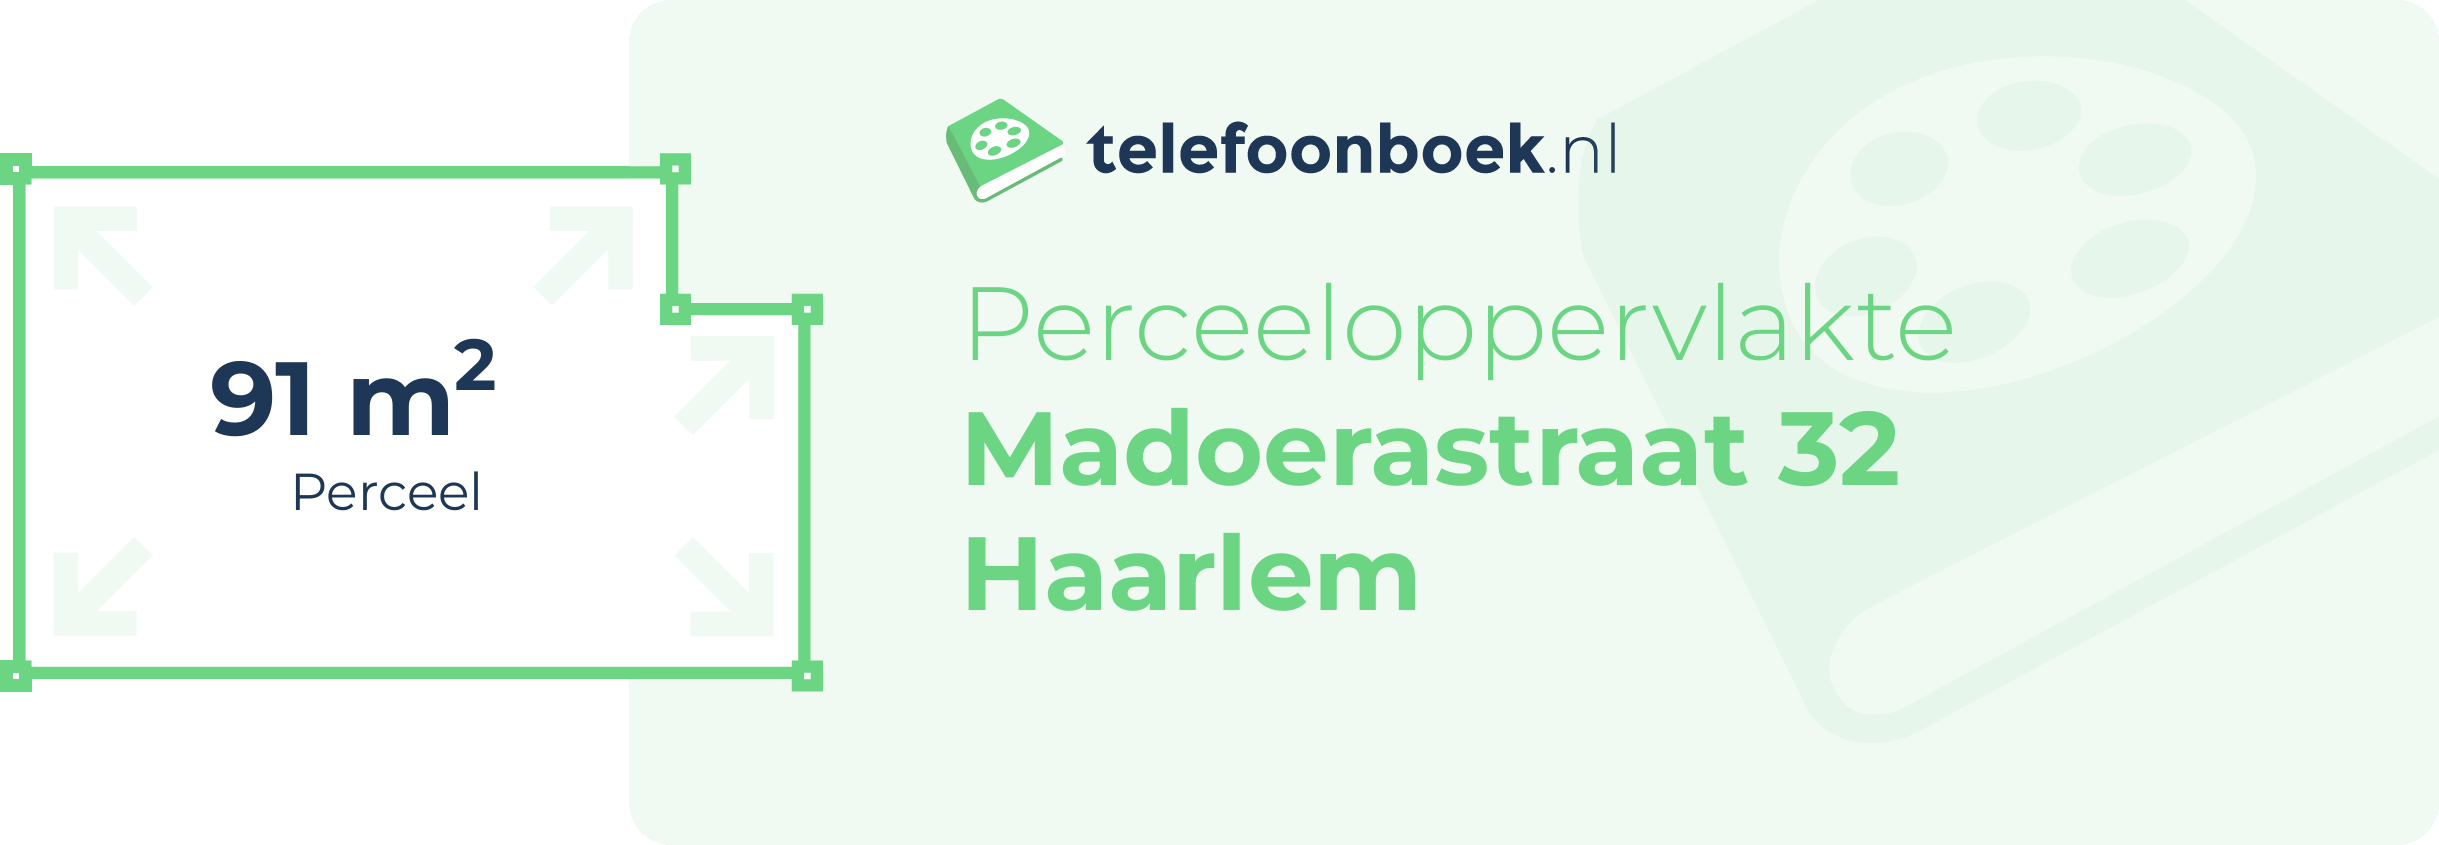 Perceeloppervlakte Madoerastraat 32 Haarlem